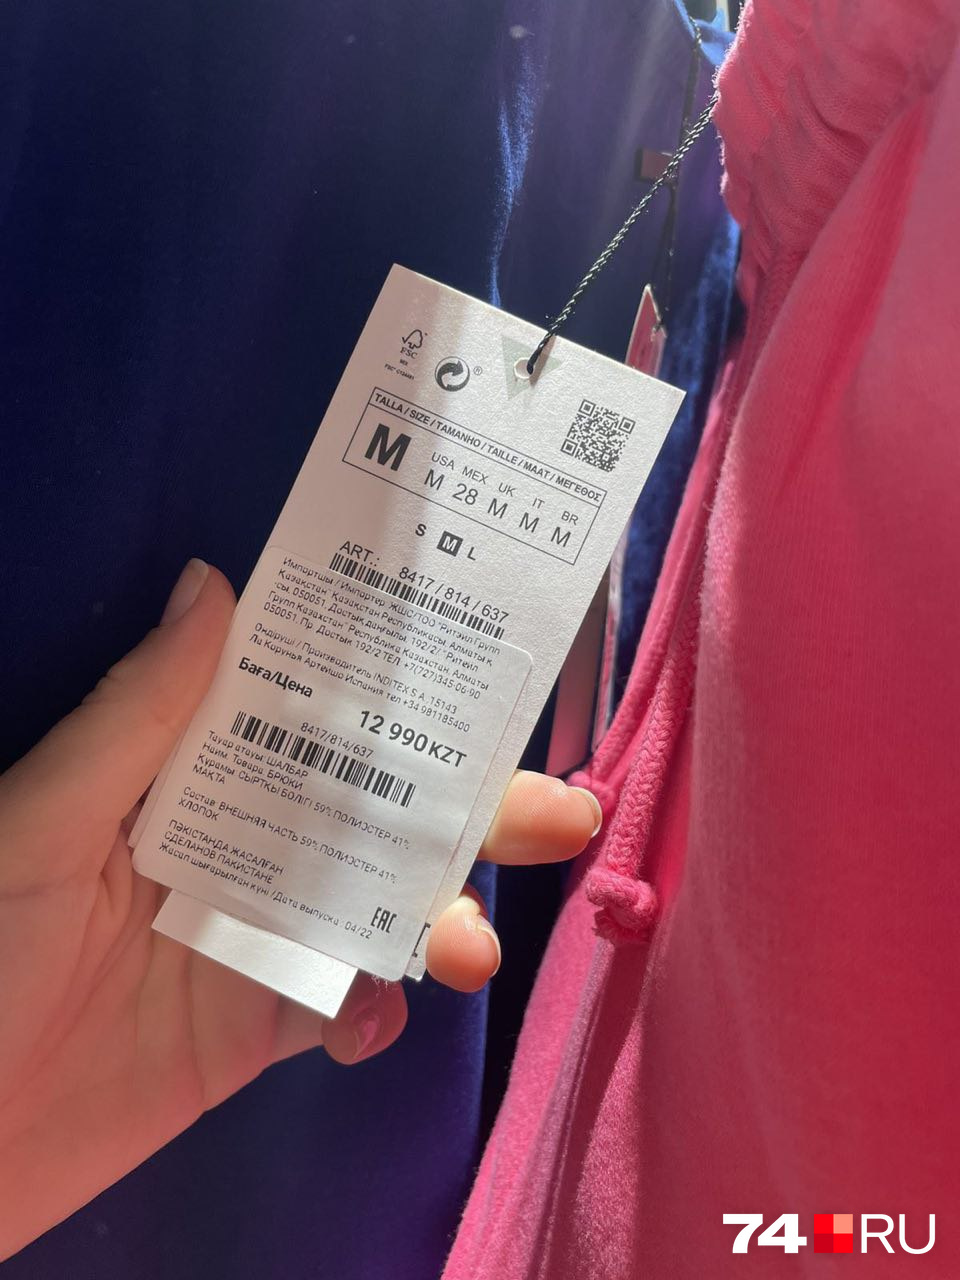 Спортивные штаны в Zara по распродаже — <nobr class="_">12 990</nobr> тенге. Чтобы перевести в рубли, надо сумму разделить на 7,5